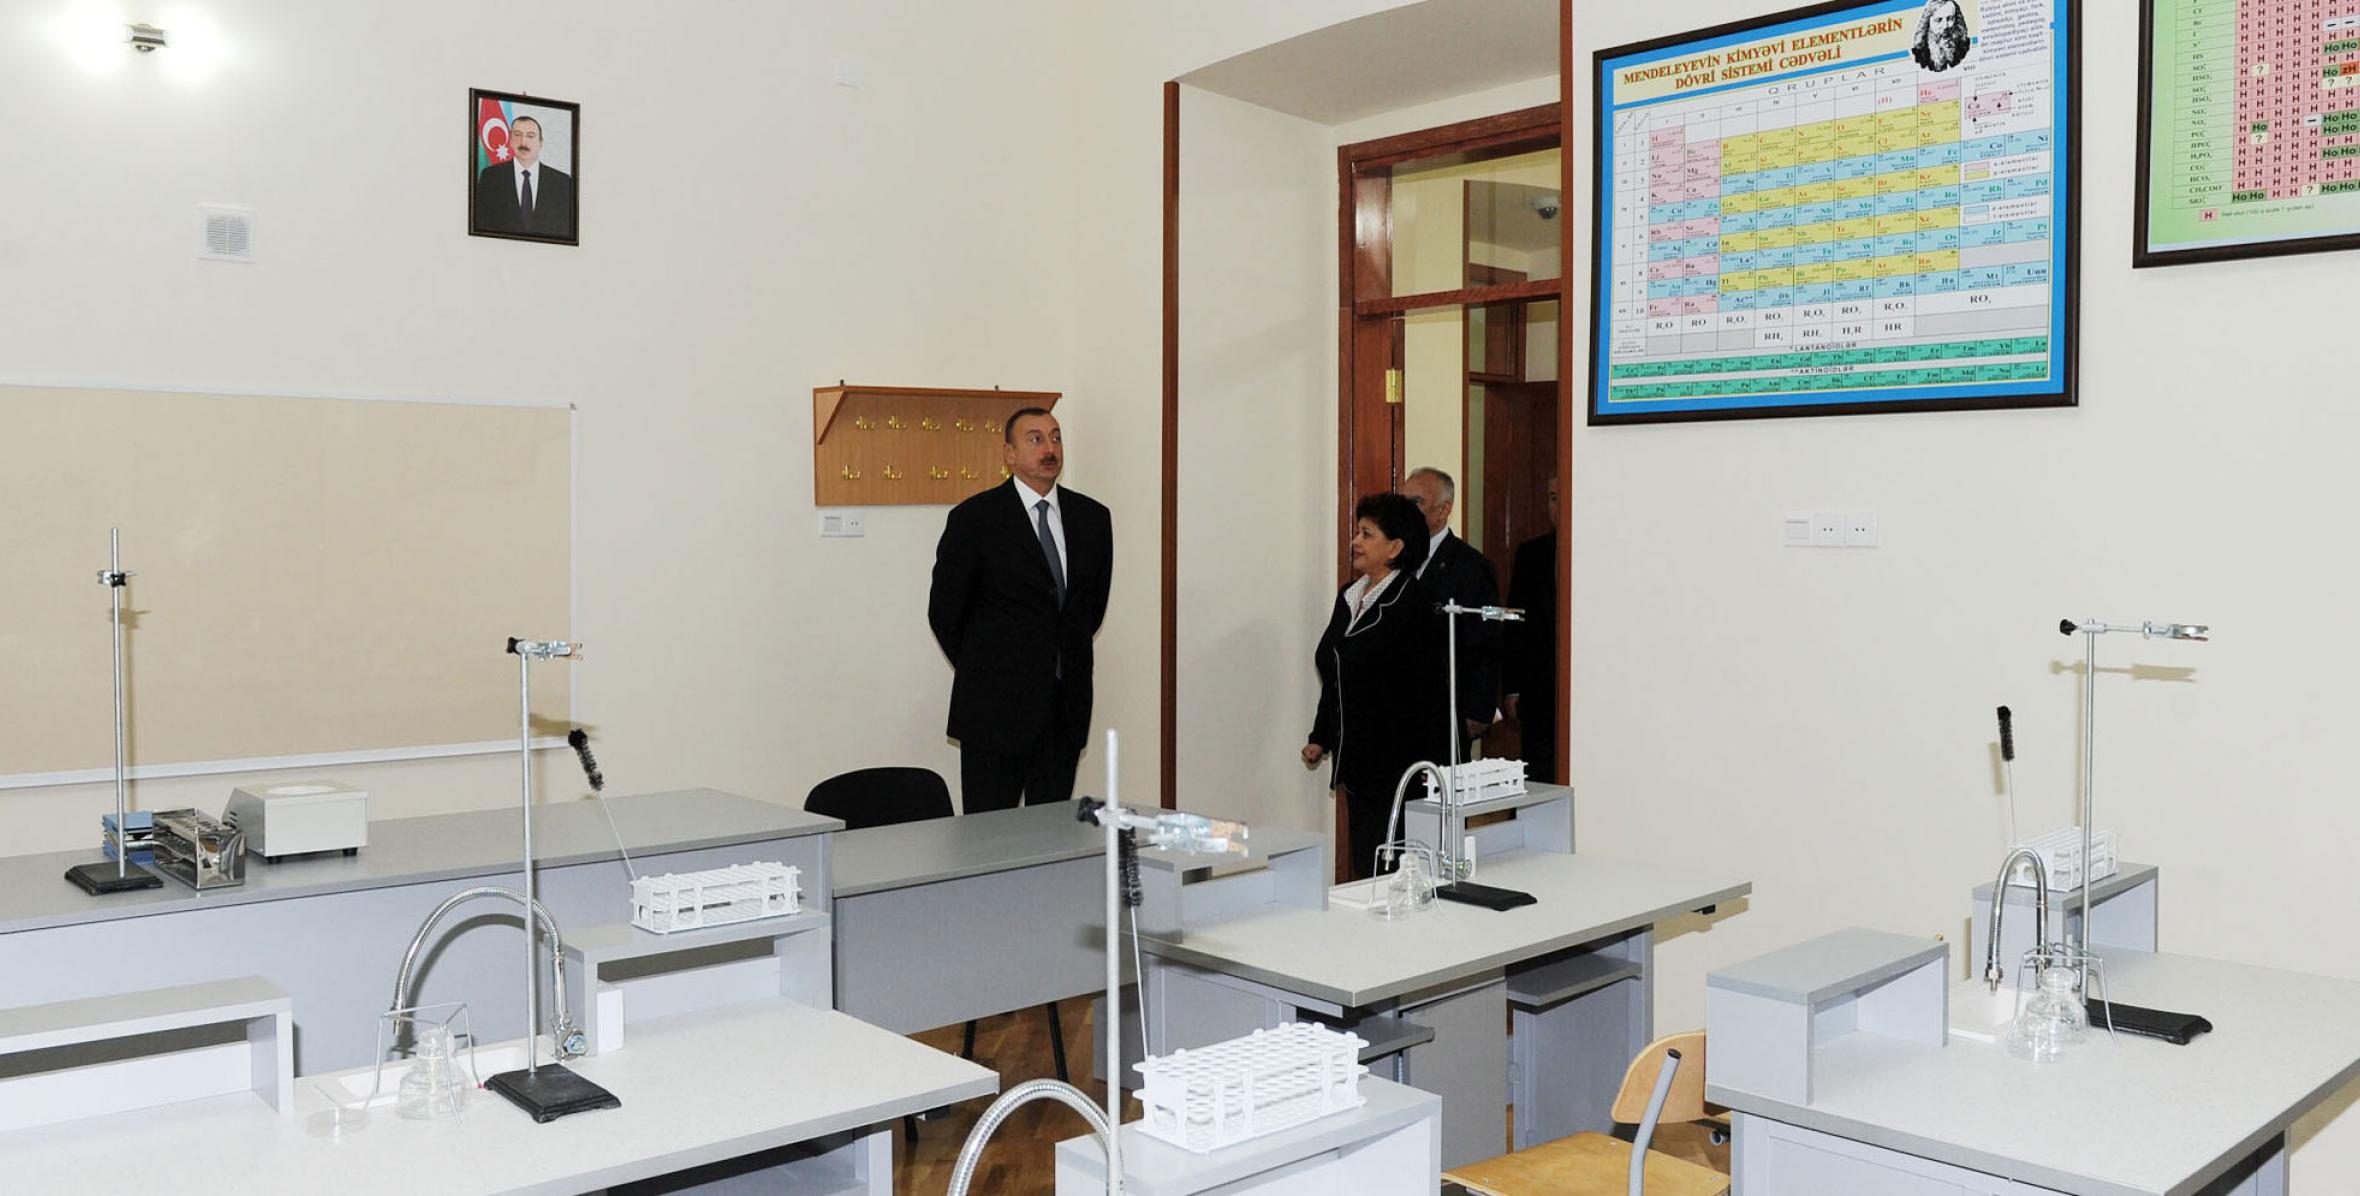 Ильхам Алиев ознакомился с состоянием полной средней школы номер 1 Насиминского района Баку после капитального ремонта и реконструкции